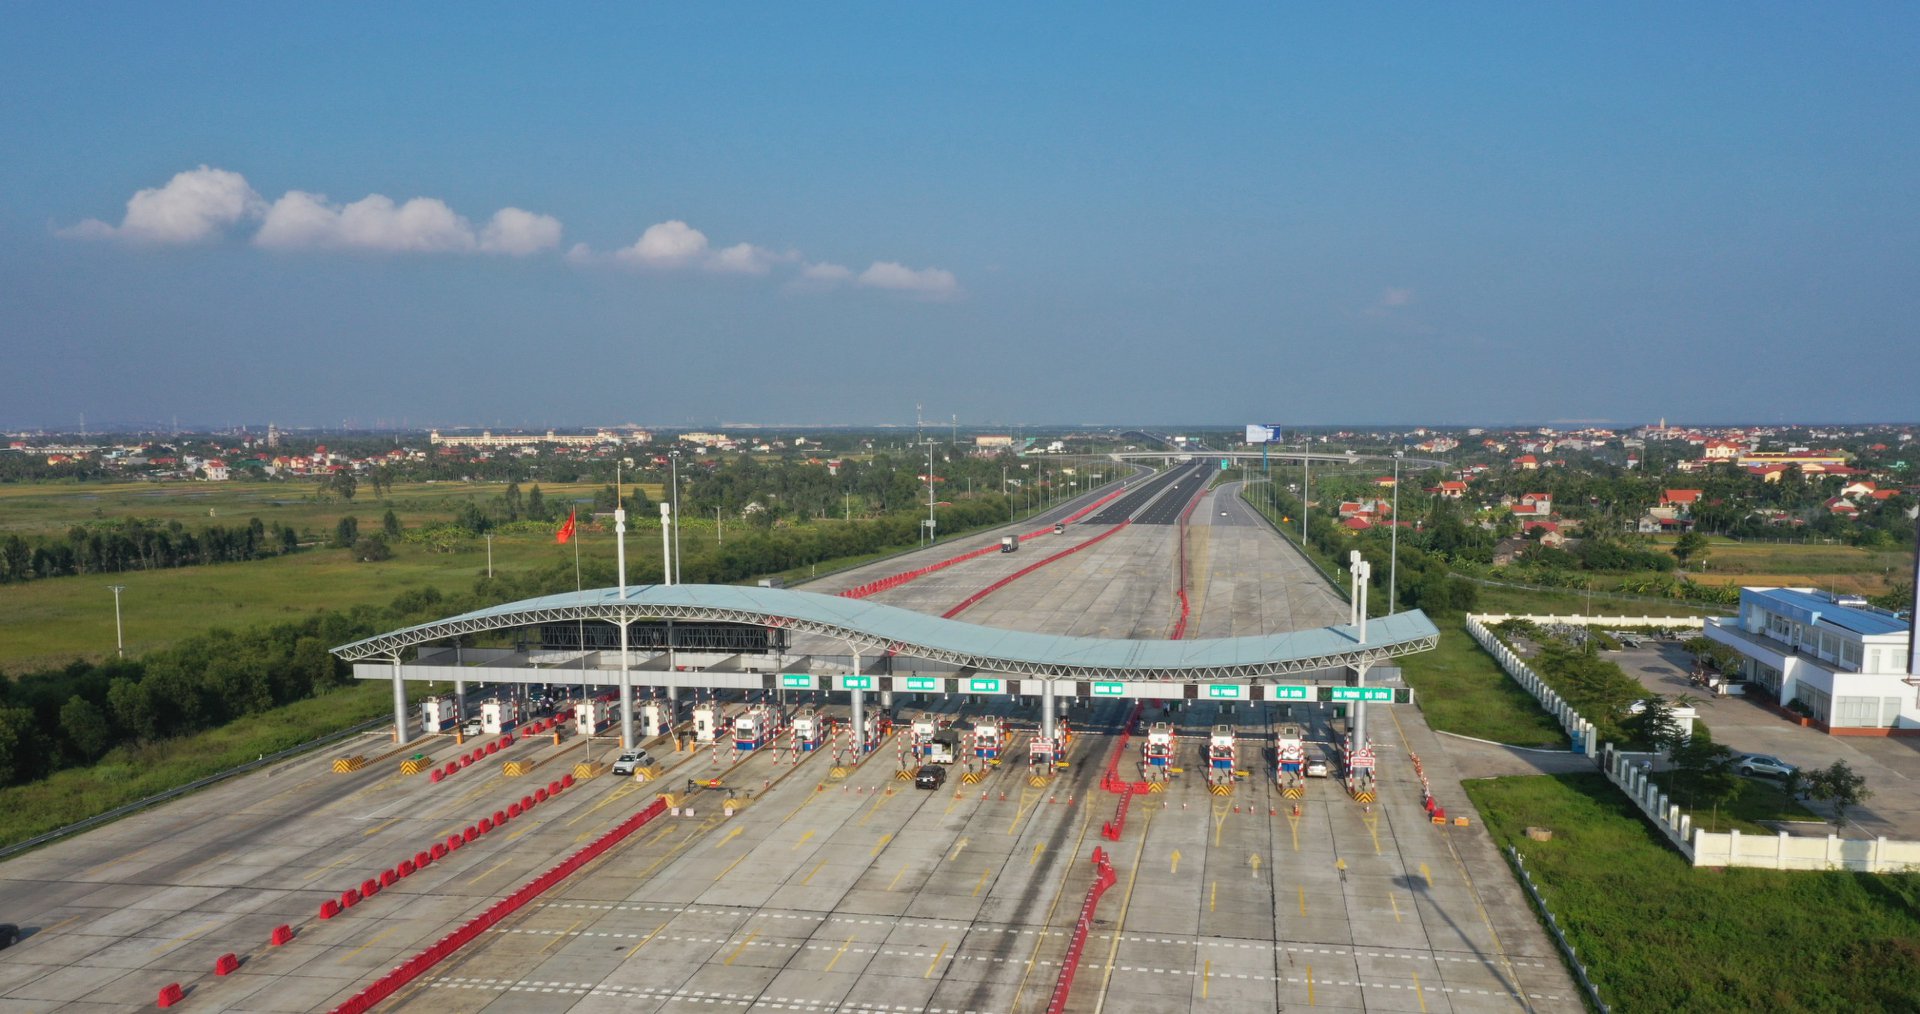 Cao tốc Hà Nội - Hải Phòng sẽ từ chối phương tiện chưa dán thẻ thu phí không dừng - Ảnh 1.